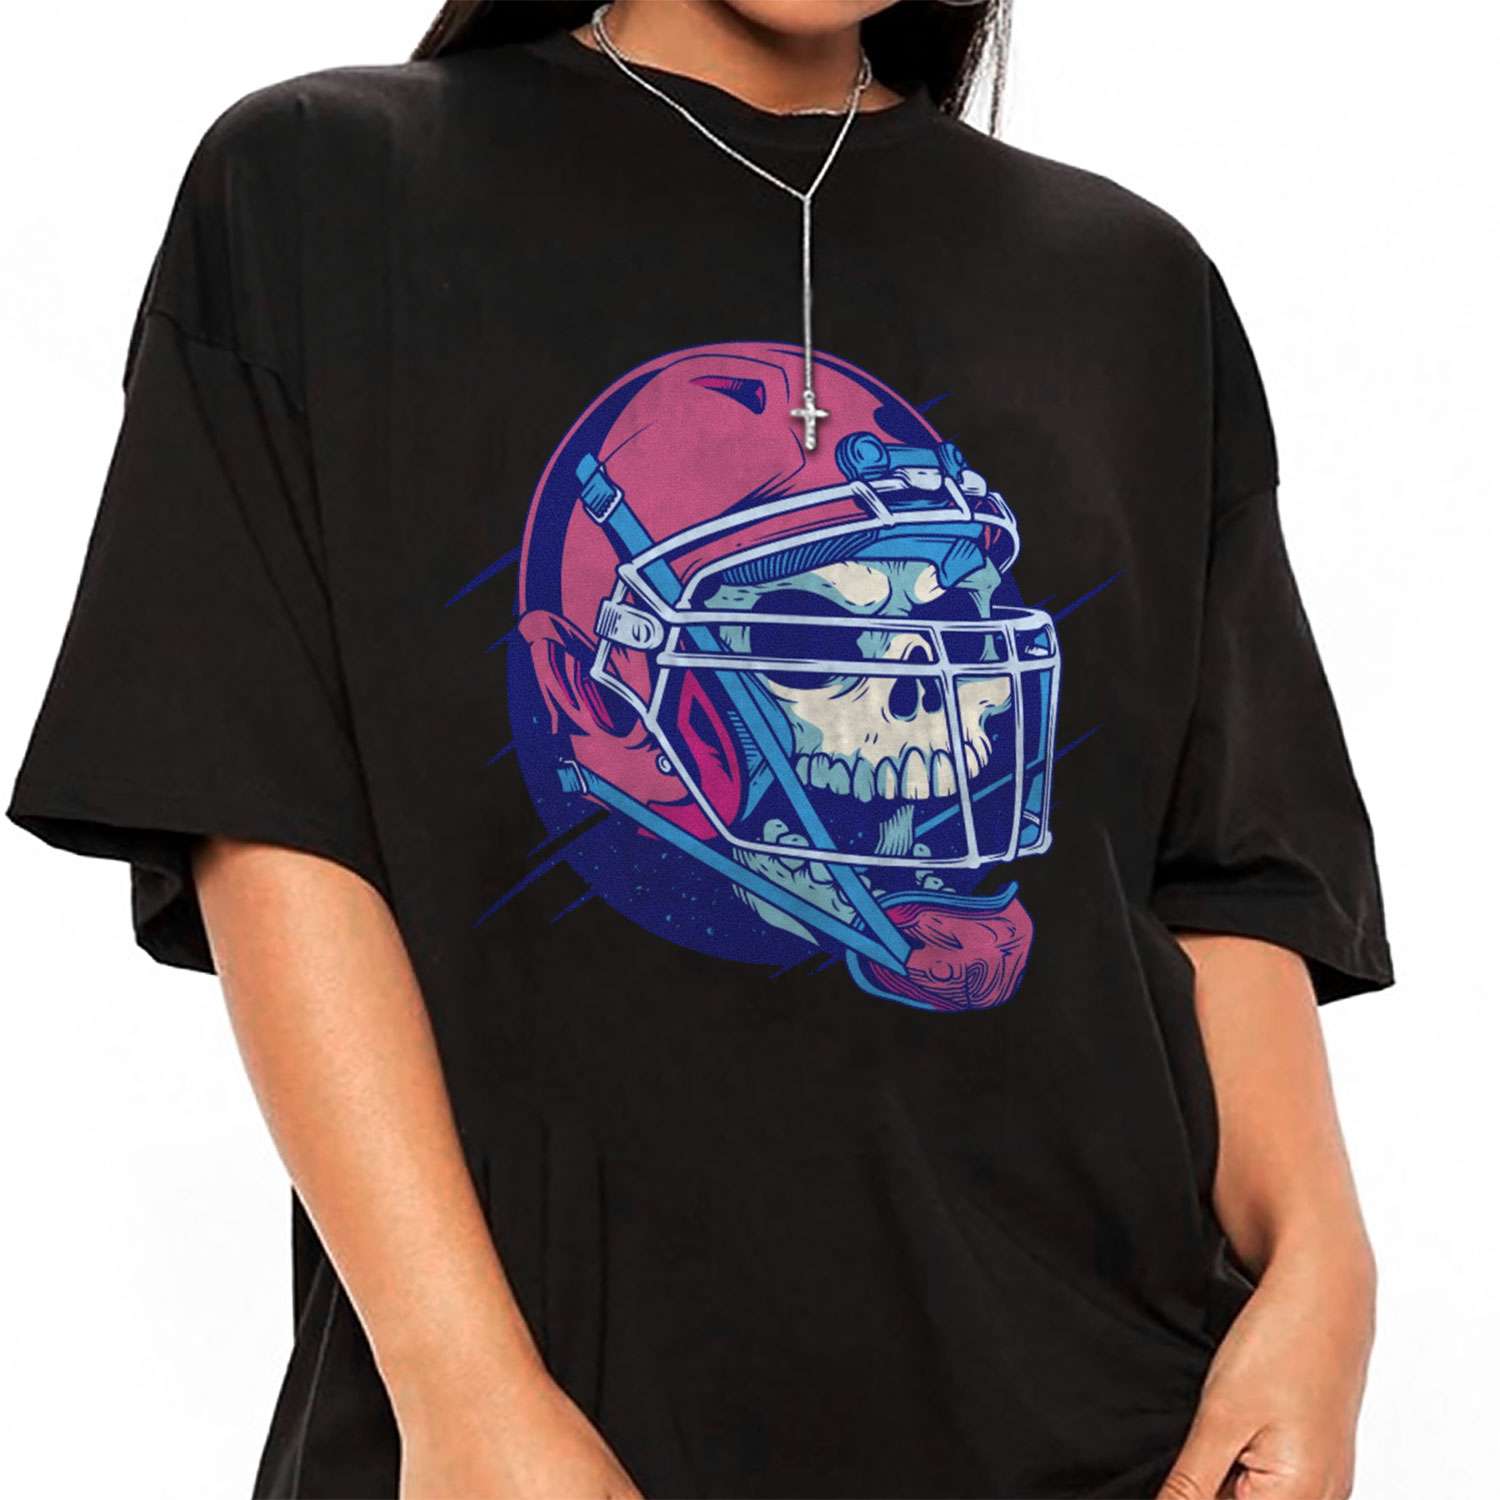 Football Skull T-shirt